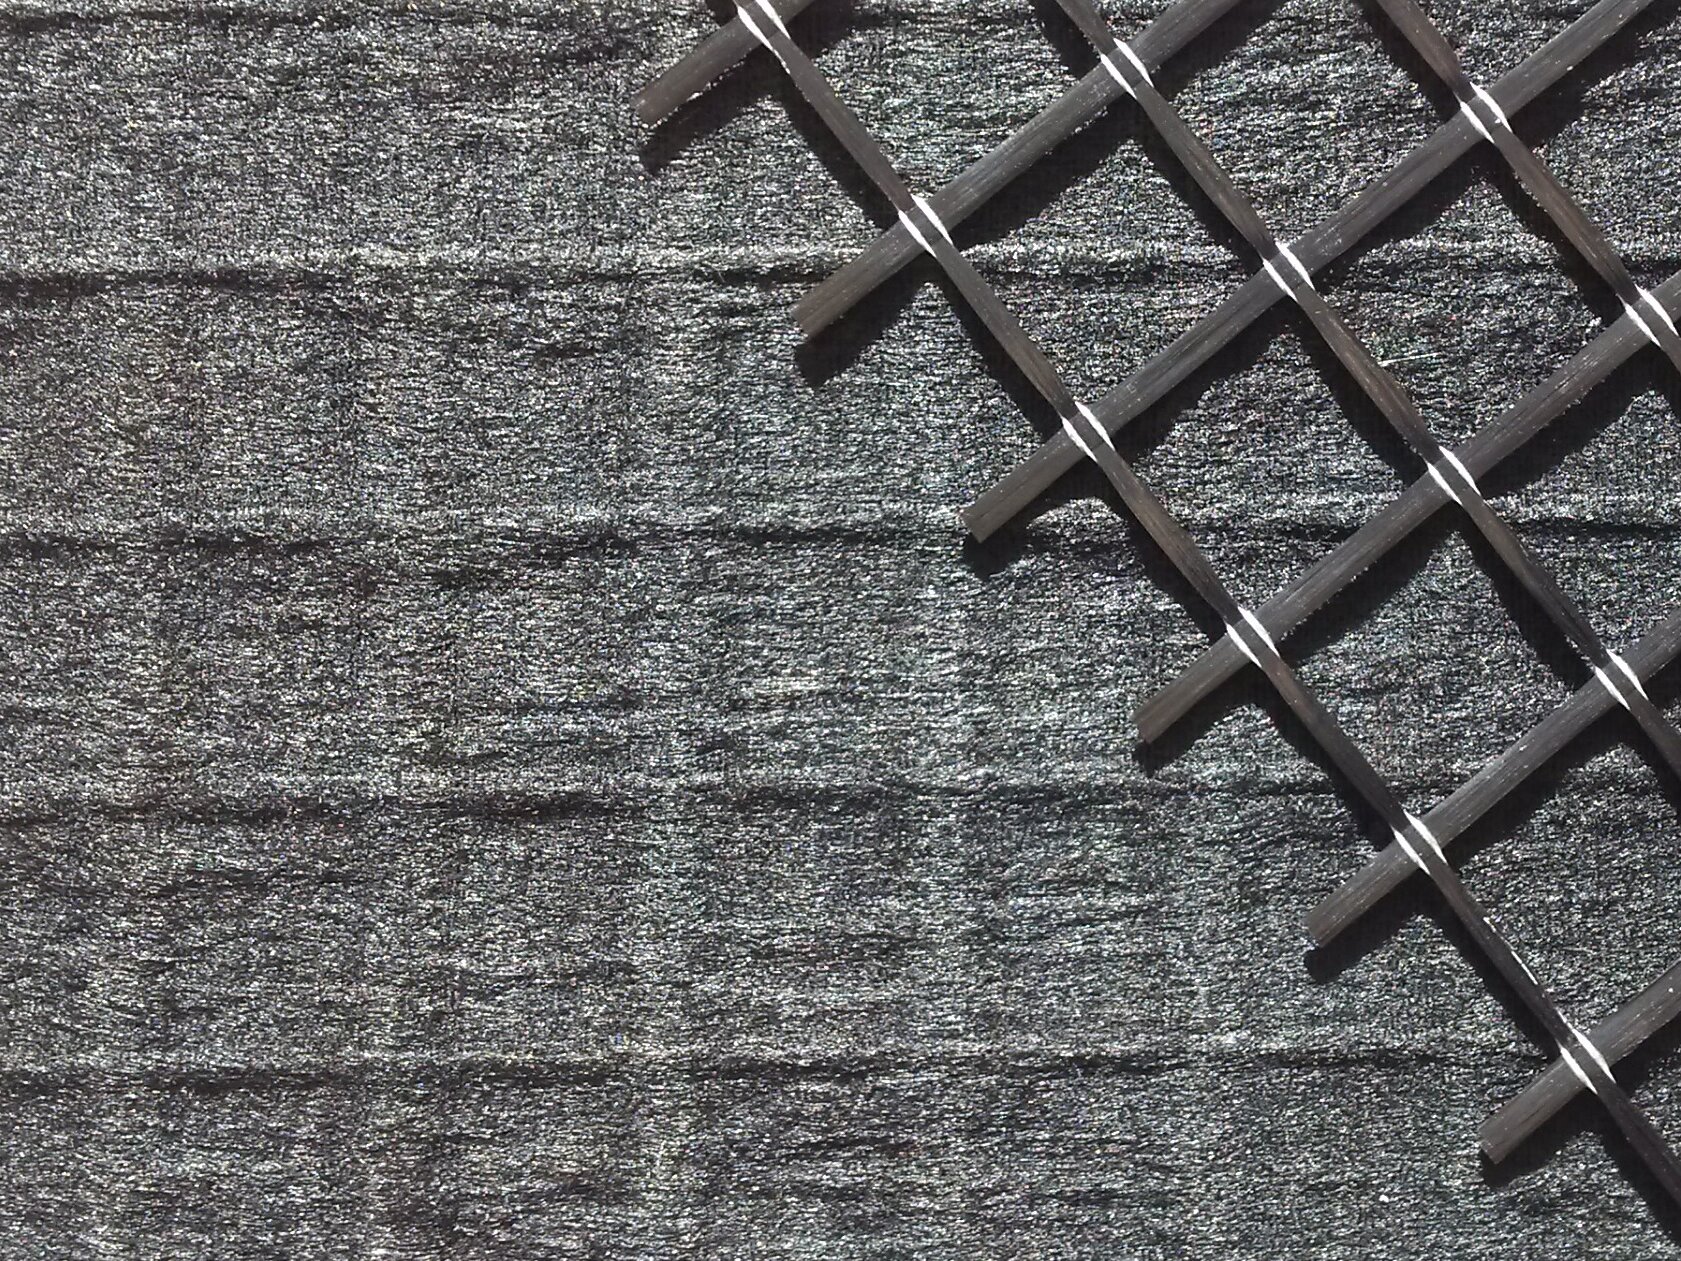 Carbon fiber nonwoven reinforced with carbon fiber grid